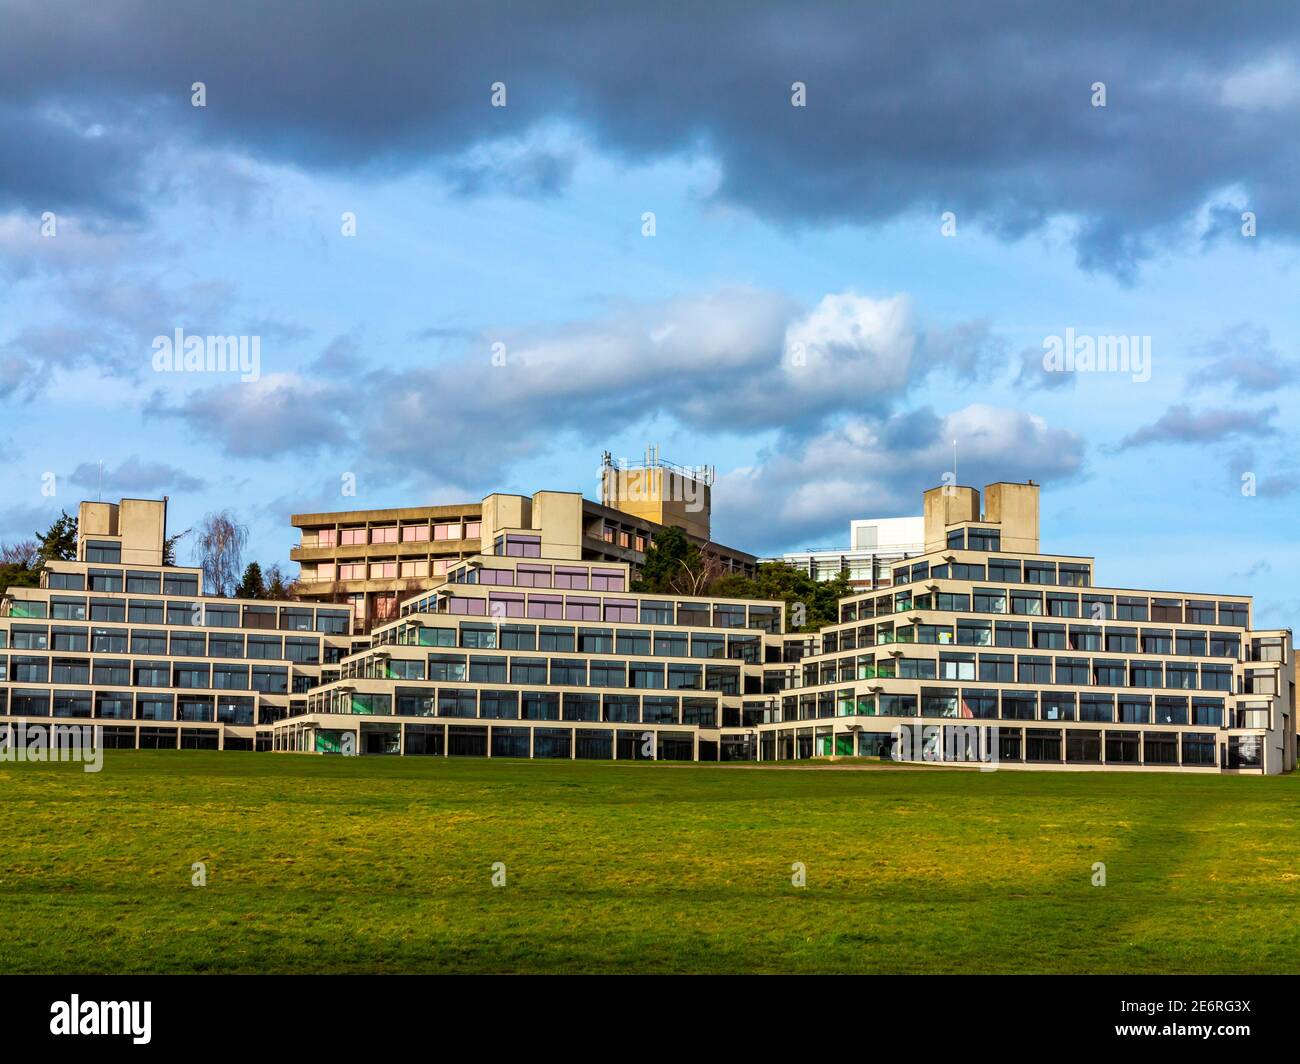 Le campus de l'Université d'East Anglia à Norwich Angleterre Royaume-Uni conçu par Denys Lasdun et construit de 1962 à 1968 avec des terrasses en béton de style ziggurat. Banque D'Images